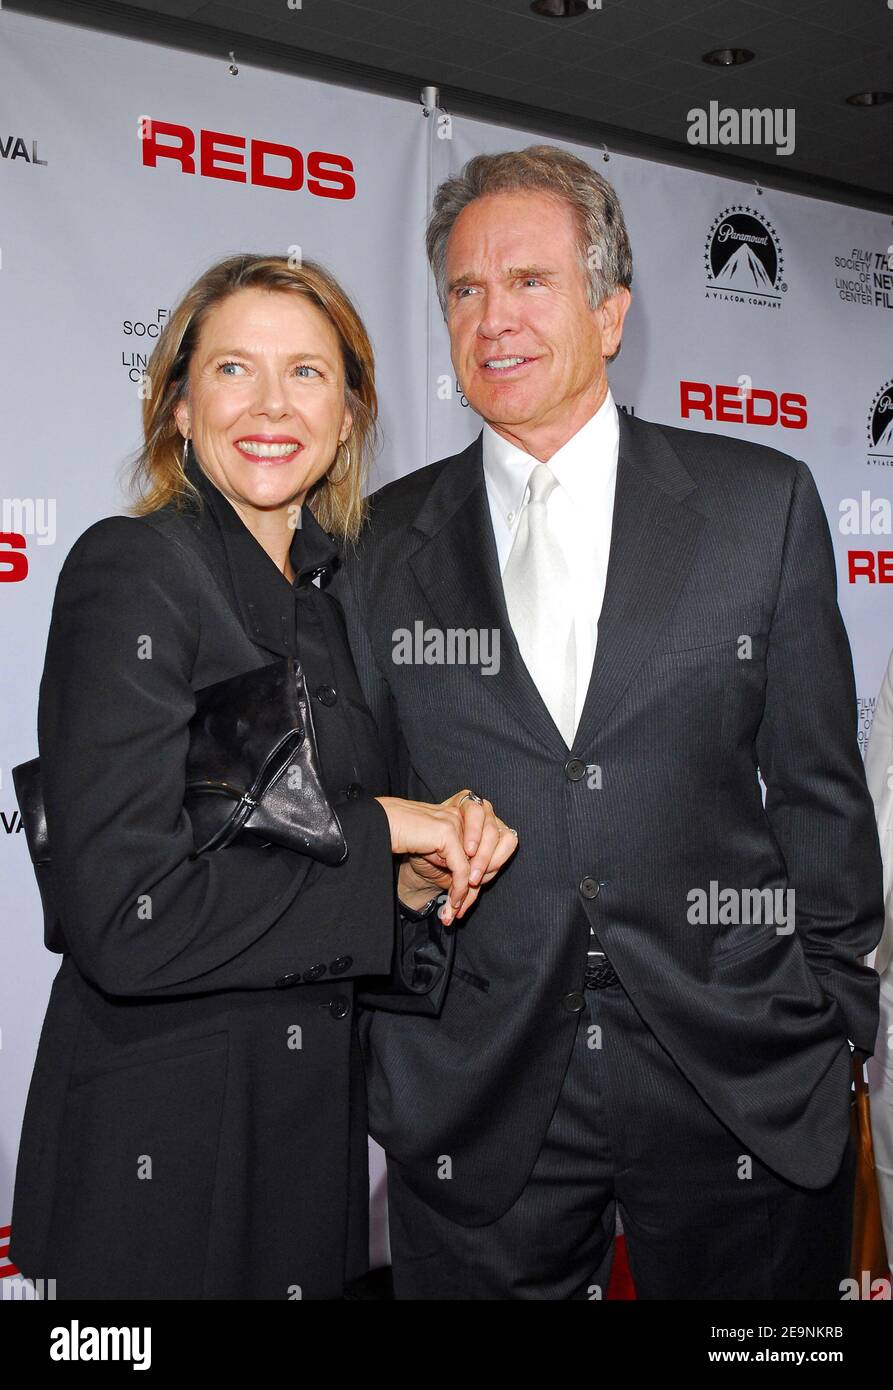 L'acteur Warren Beatty et sa femme Annette Bening assistent à une  projection spéciale du 25e anniversaire de Paramount Home Entertainment de  'Redss' qui s'est tenue au Lincoln Center le mercredi 4 octobre